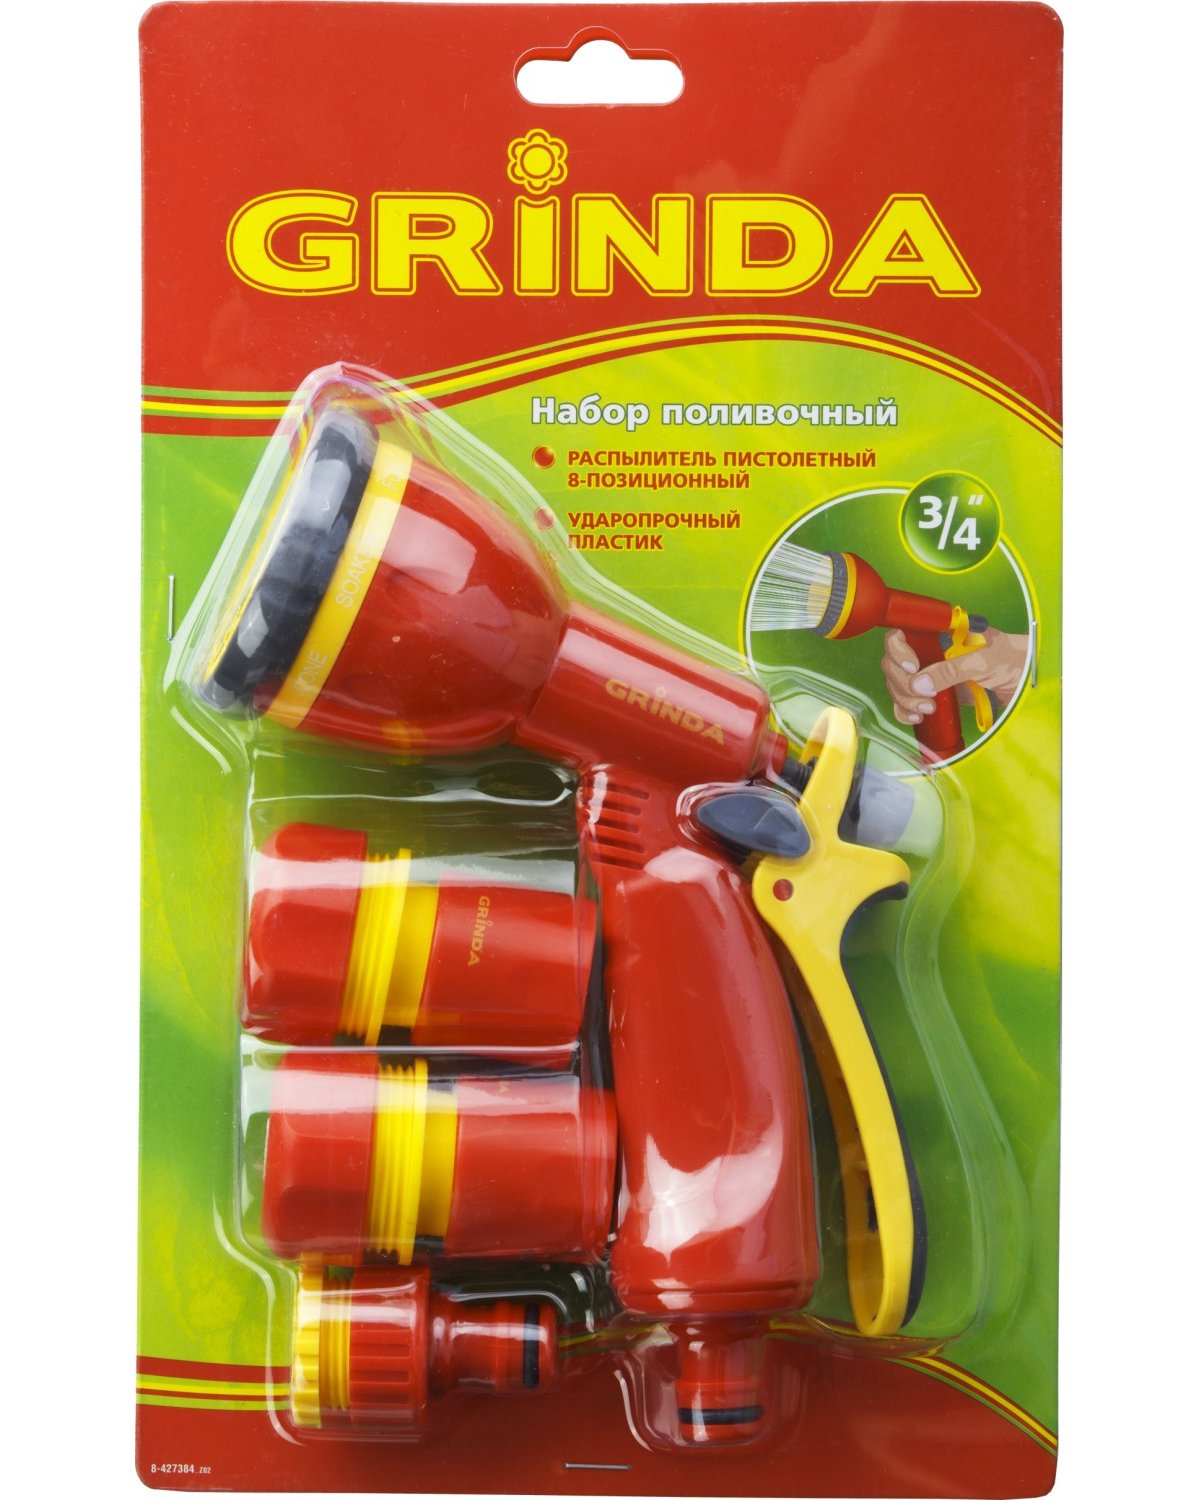 Поливочный набор GRINDA GS-34 пластиковый пистолет с 8 режимами, комплект соединительной арматуры 3 4 (8-427384_z02)